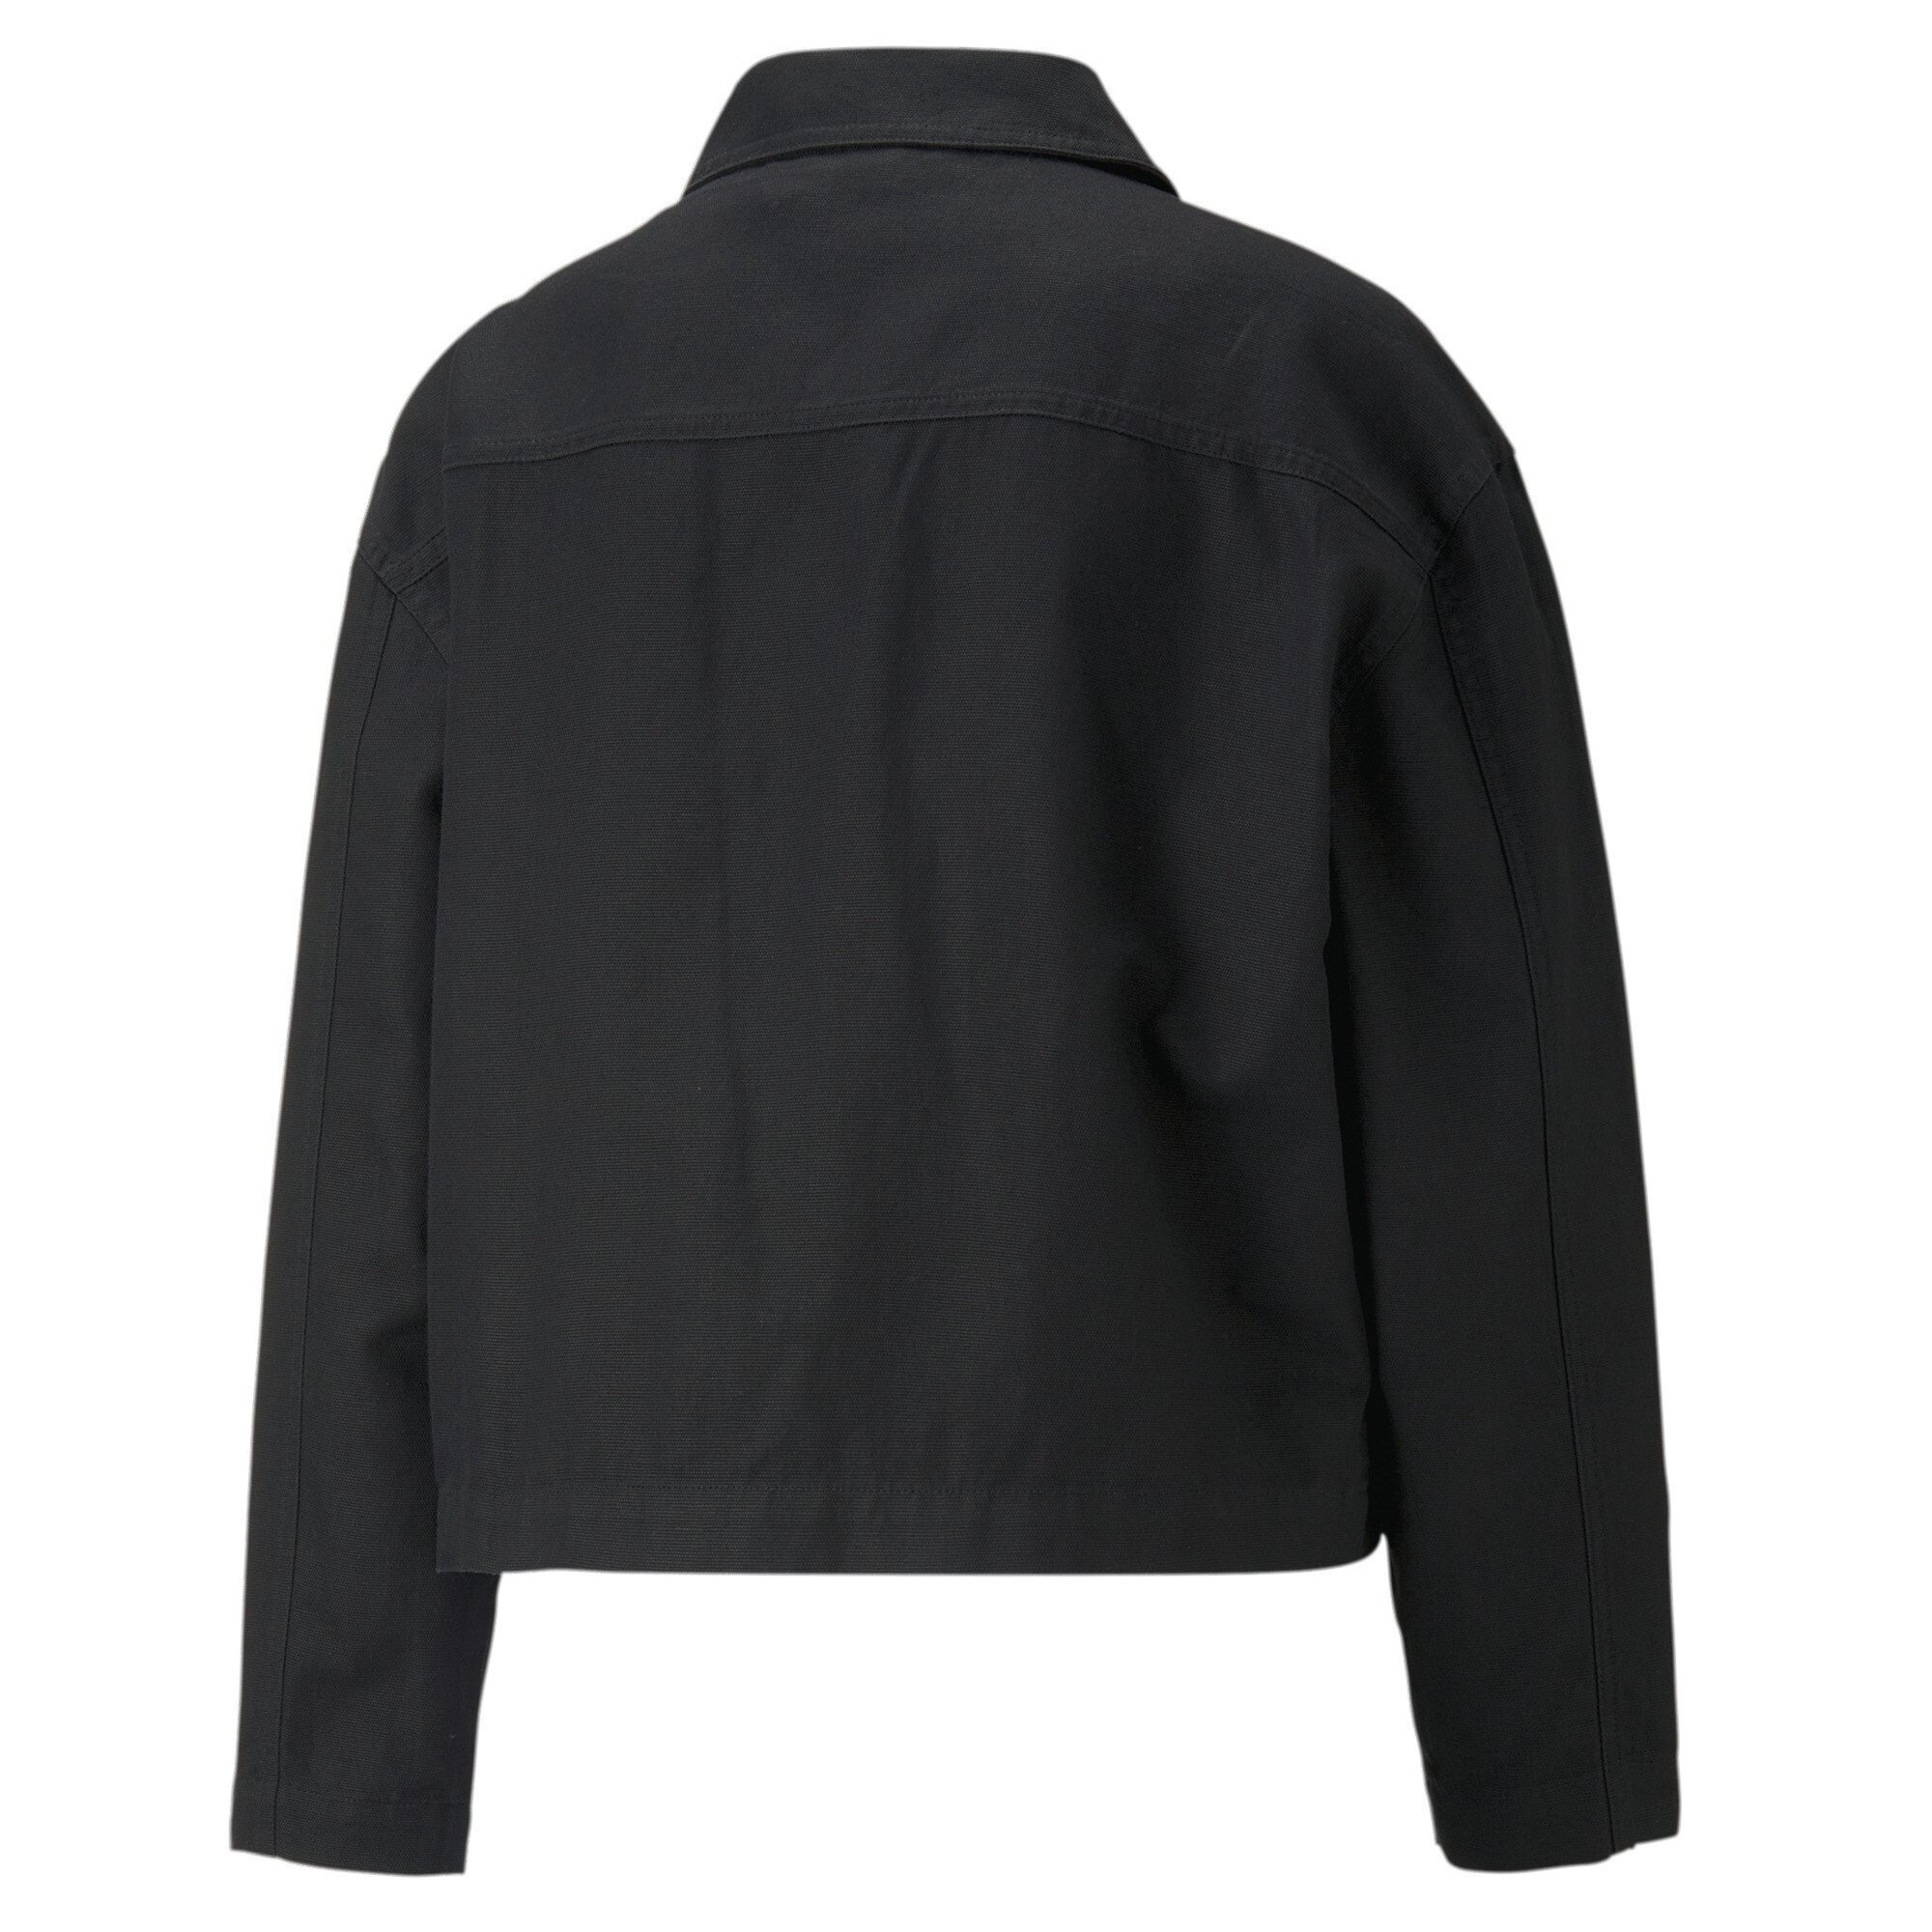 Women's PUMA DOWNTOWN Jacket Women In Black, Size Small